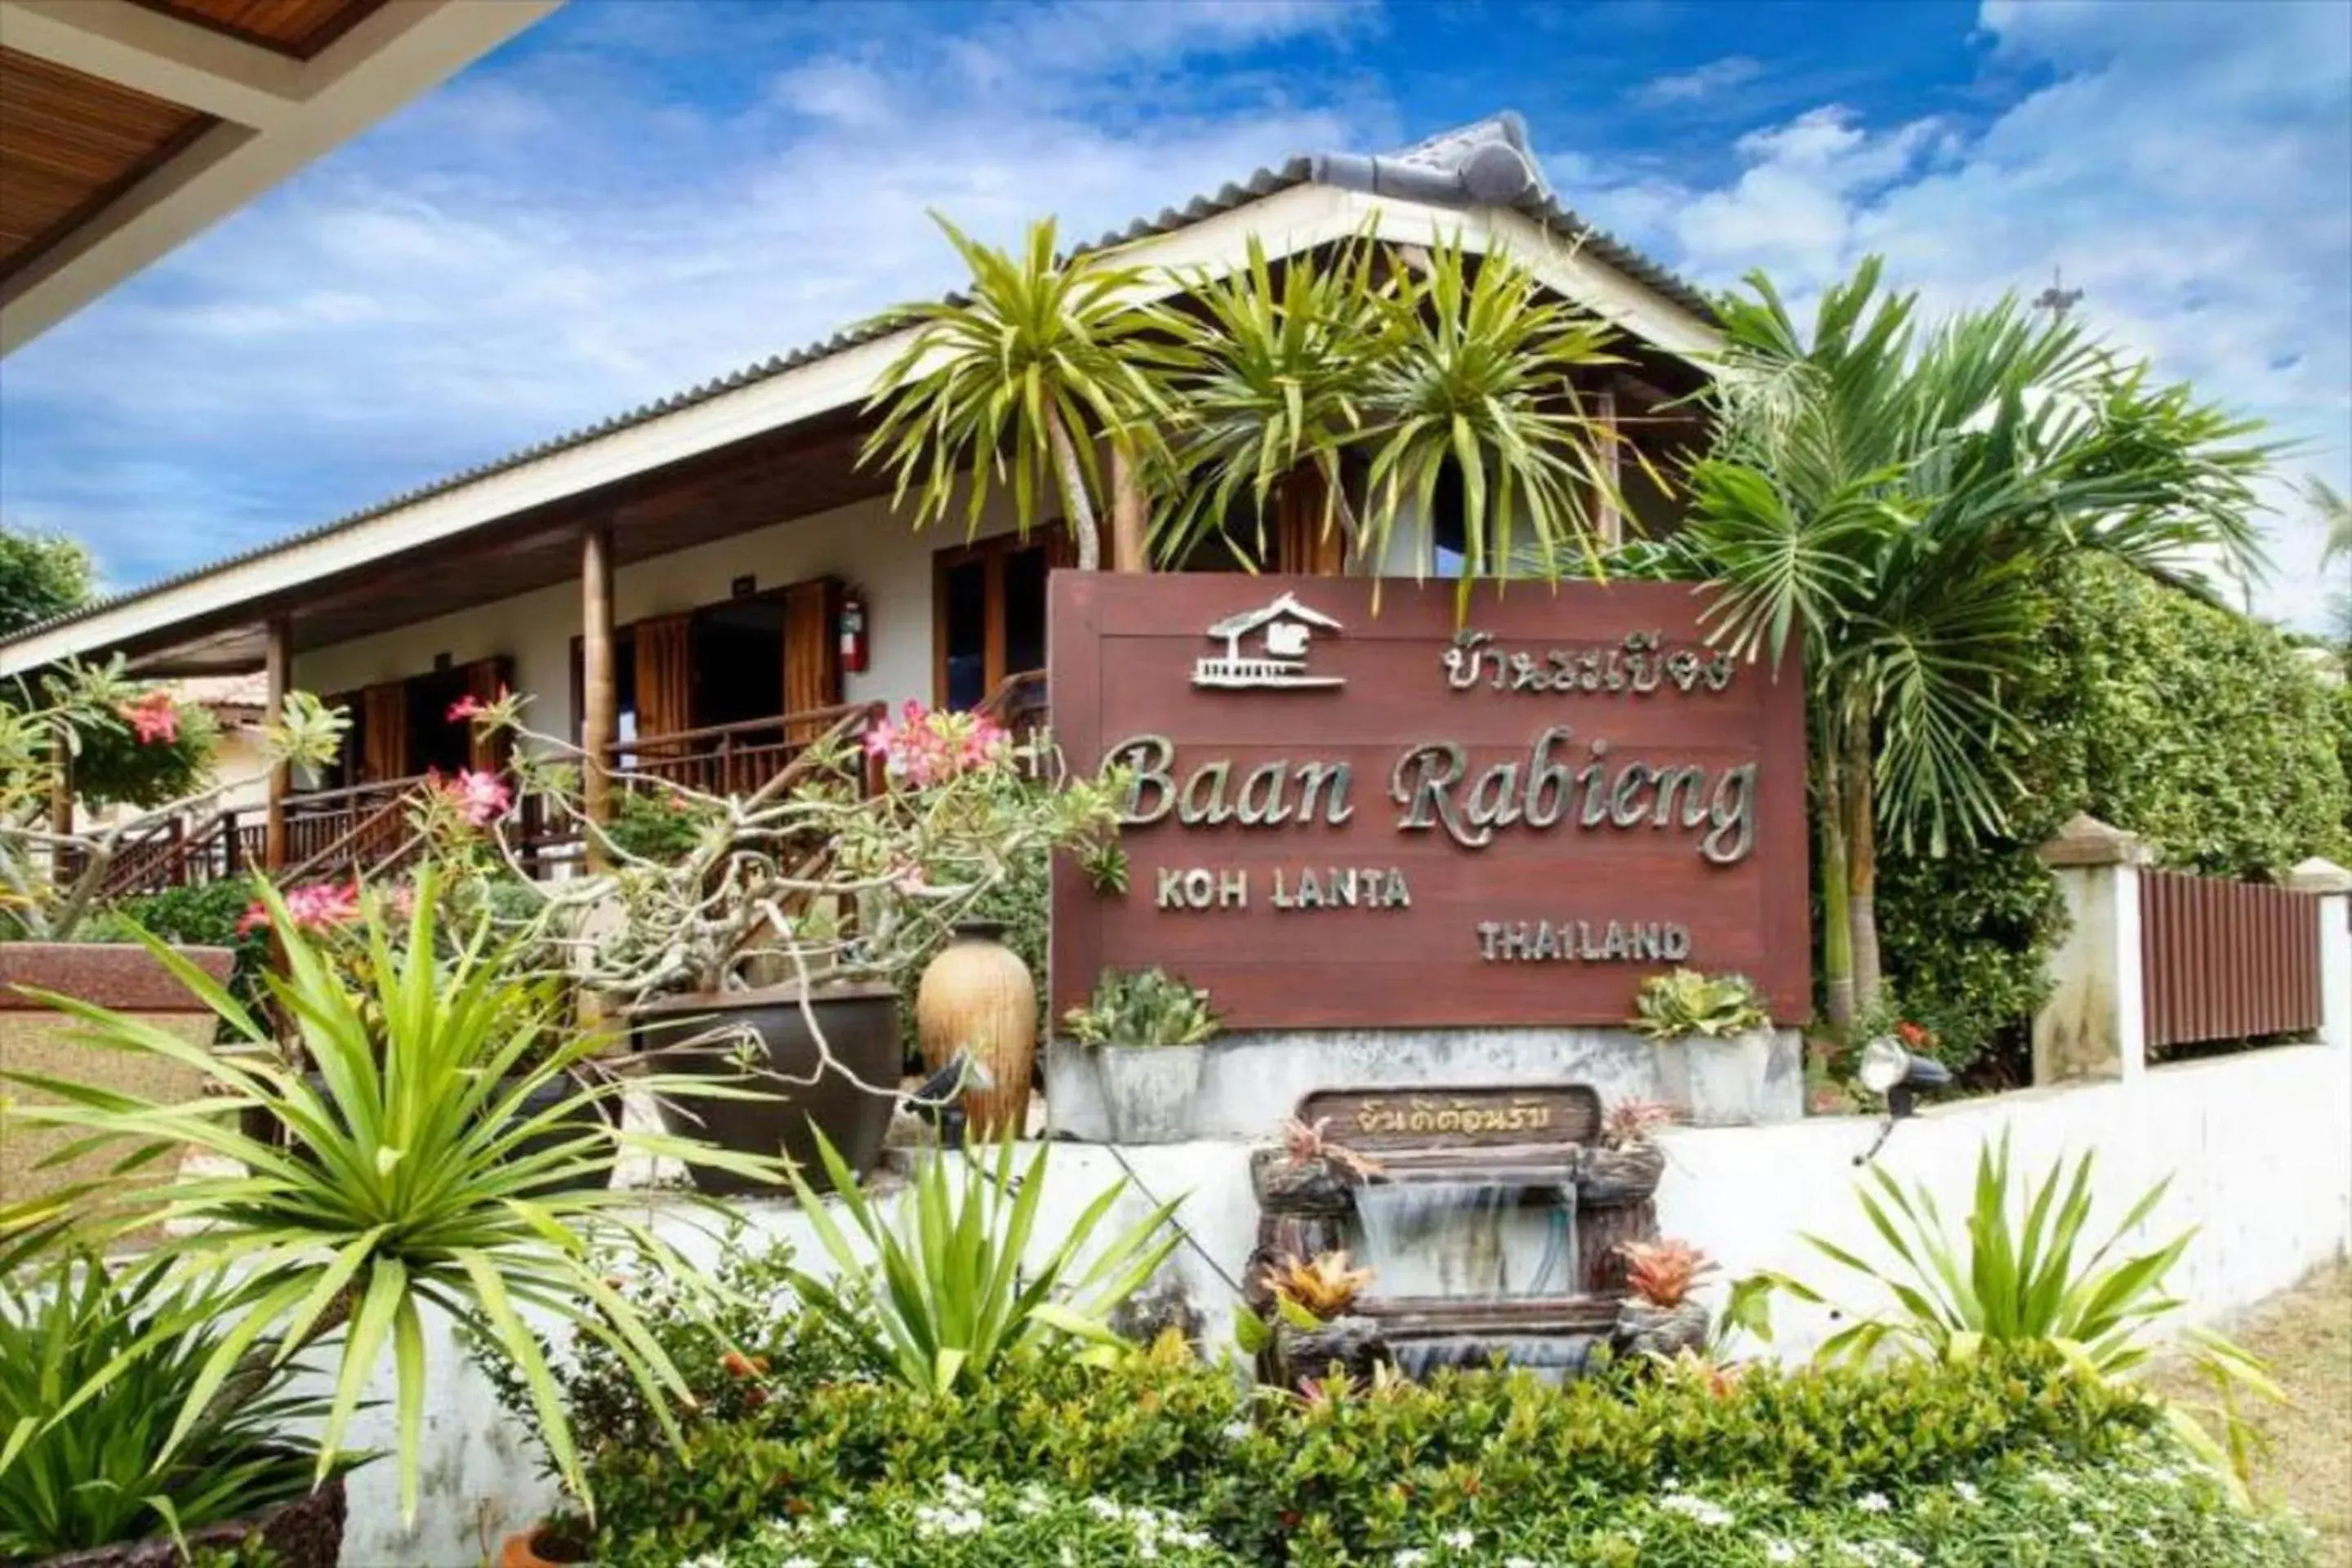 Property Building in Baan Rabieng Resort